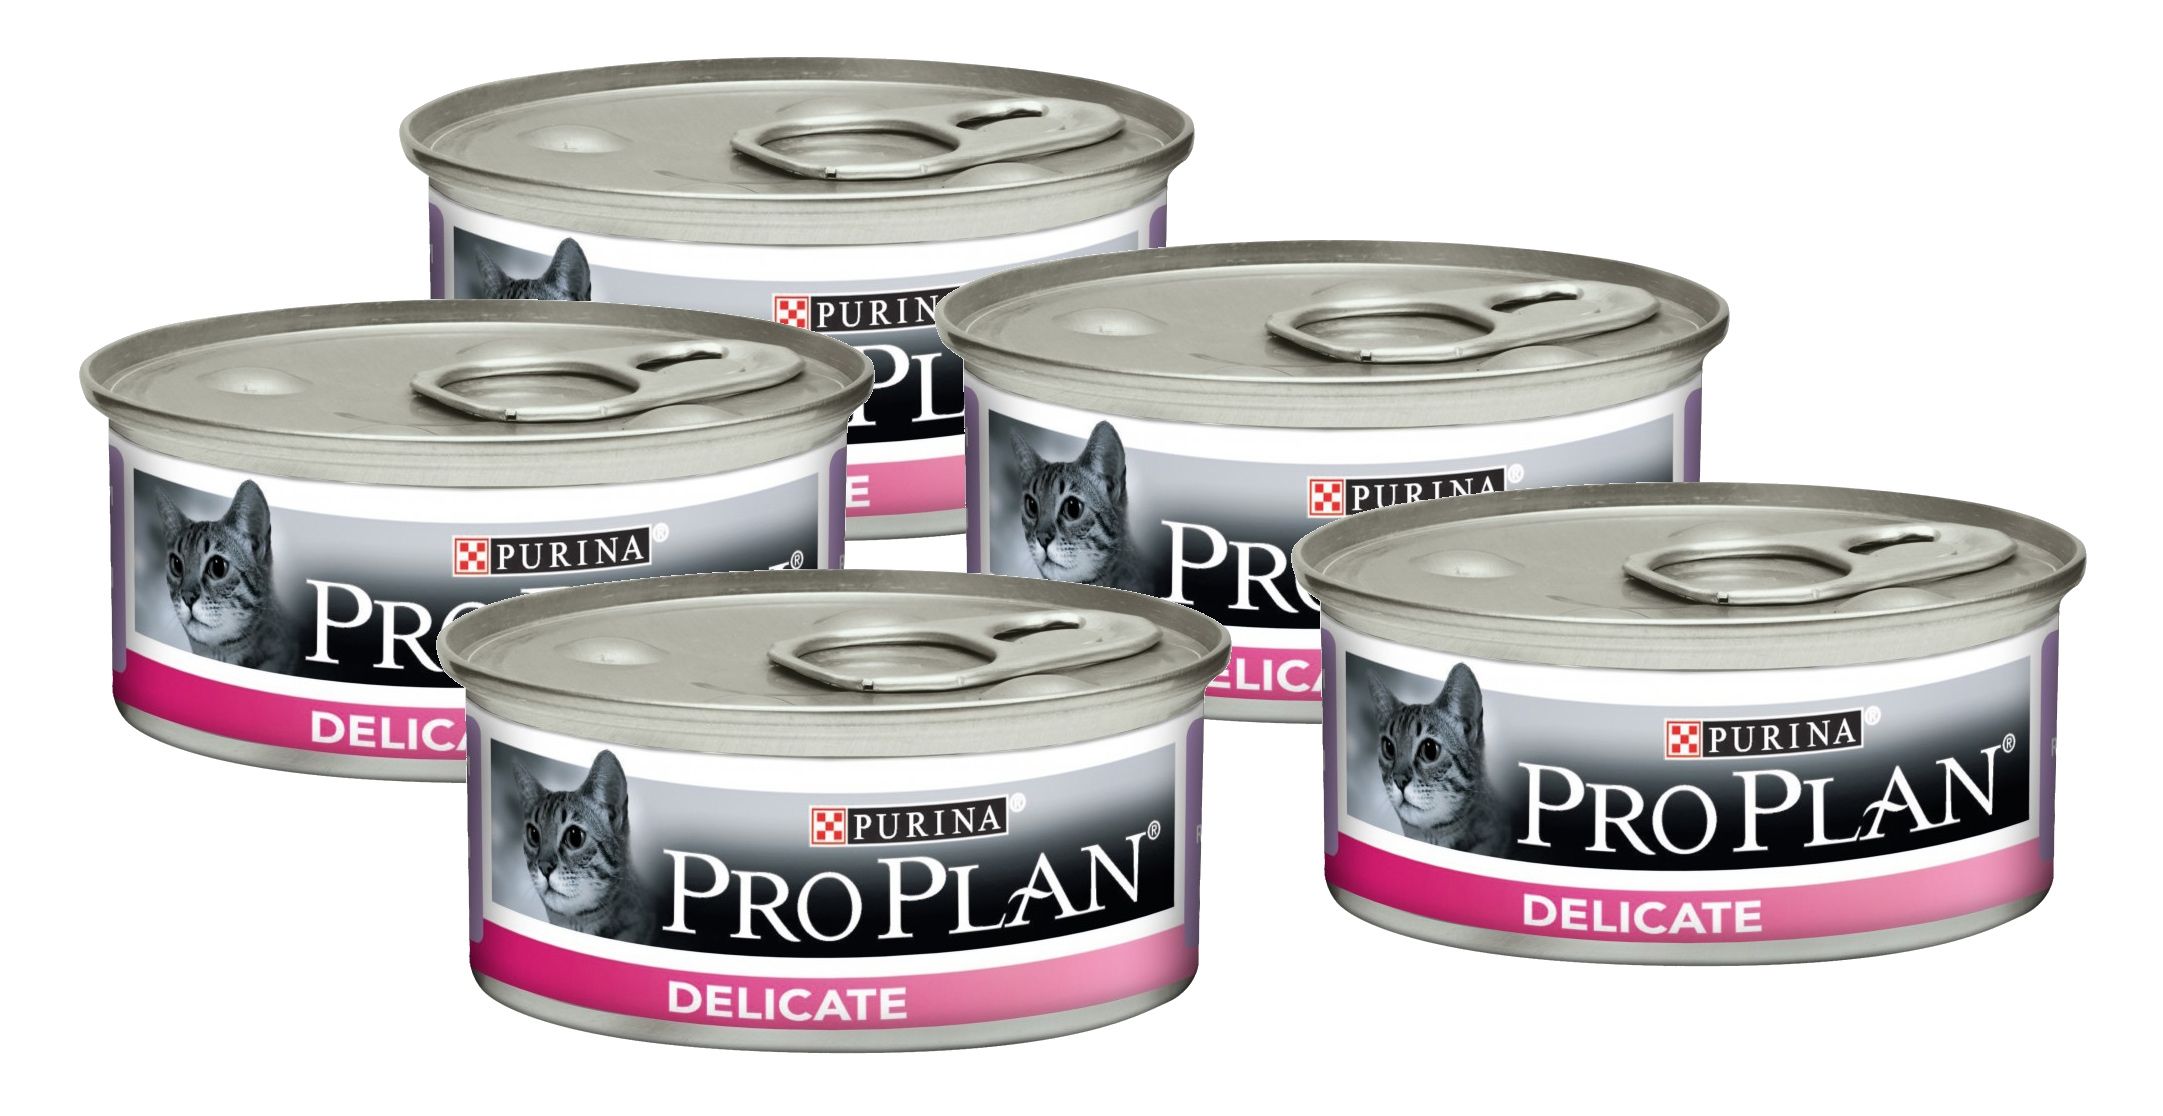 Купить влажный корм для кошек в спб. Pro Plan delicate для кошек консервы. Purina Pro Plan консервы для кошек. Консервы для кошек Pro Plan delicate, индейка, 85г. Пурина Деликат консервы с индейкой для кошек.